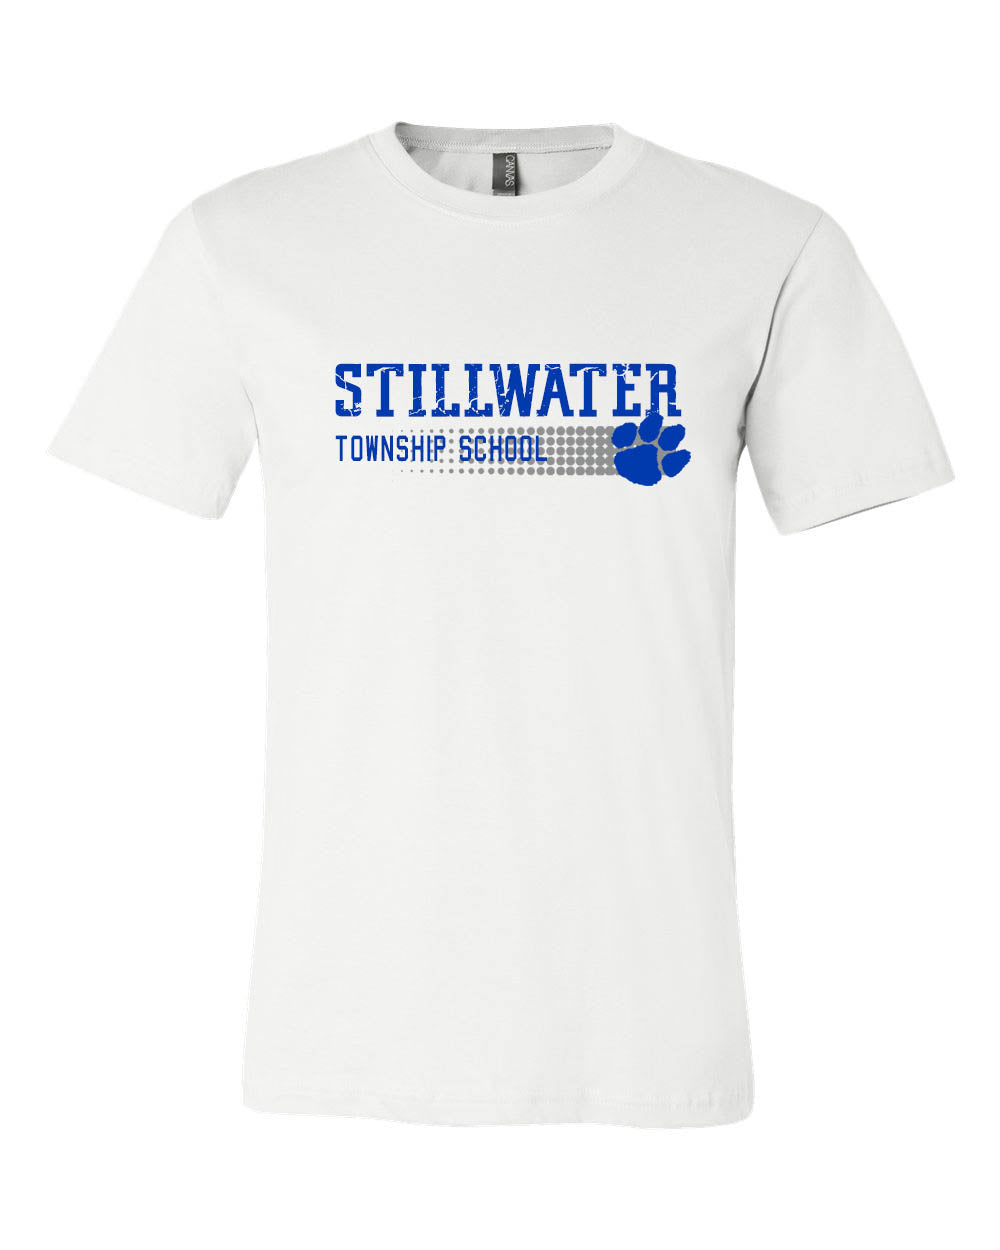 Stillwater design 14 T-Shirt